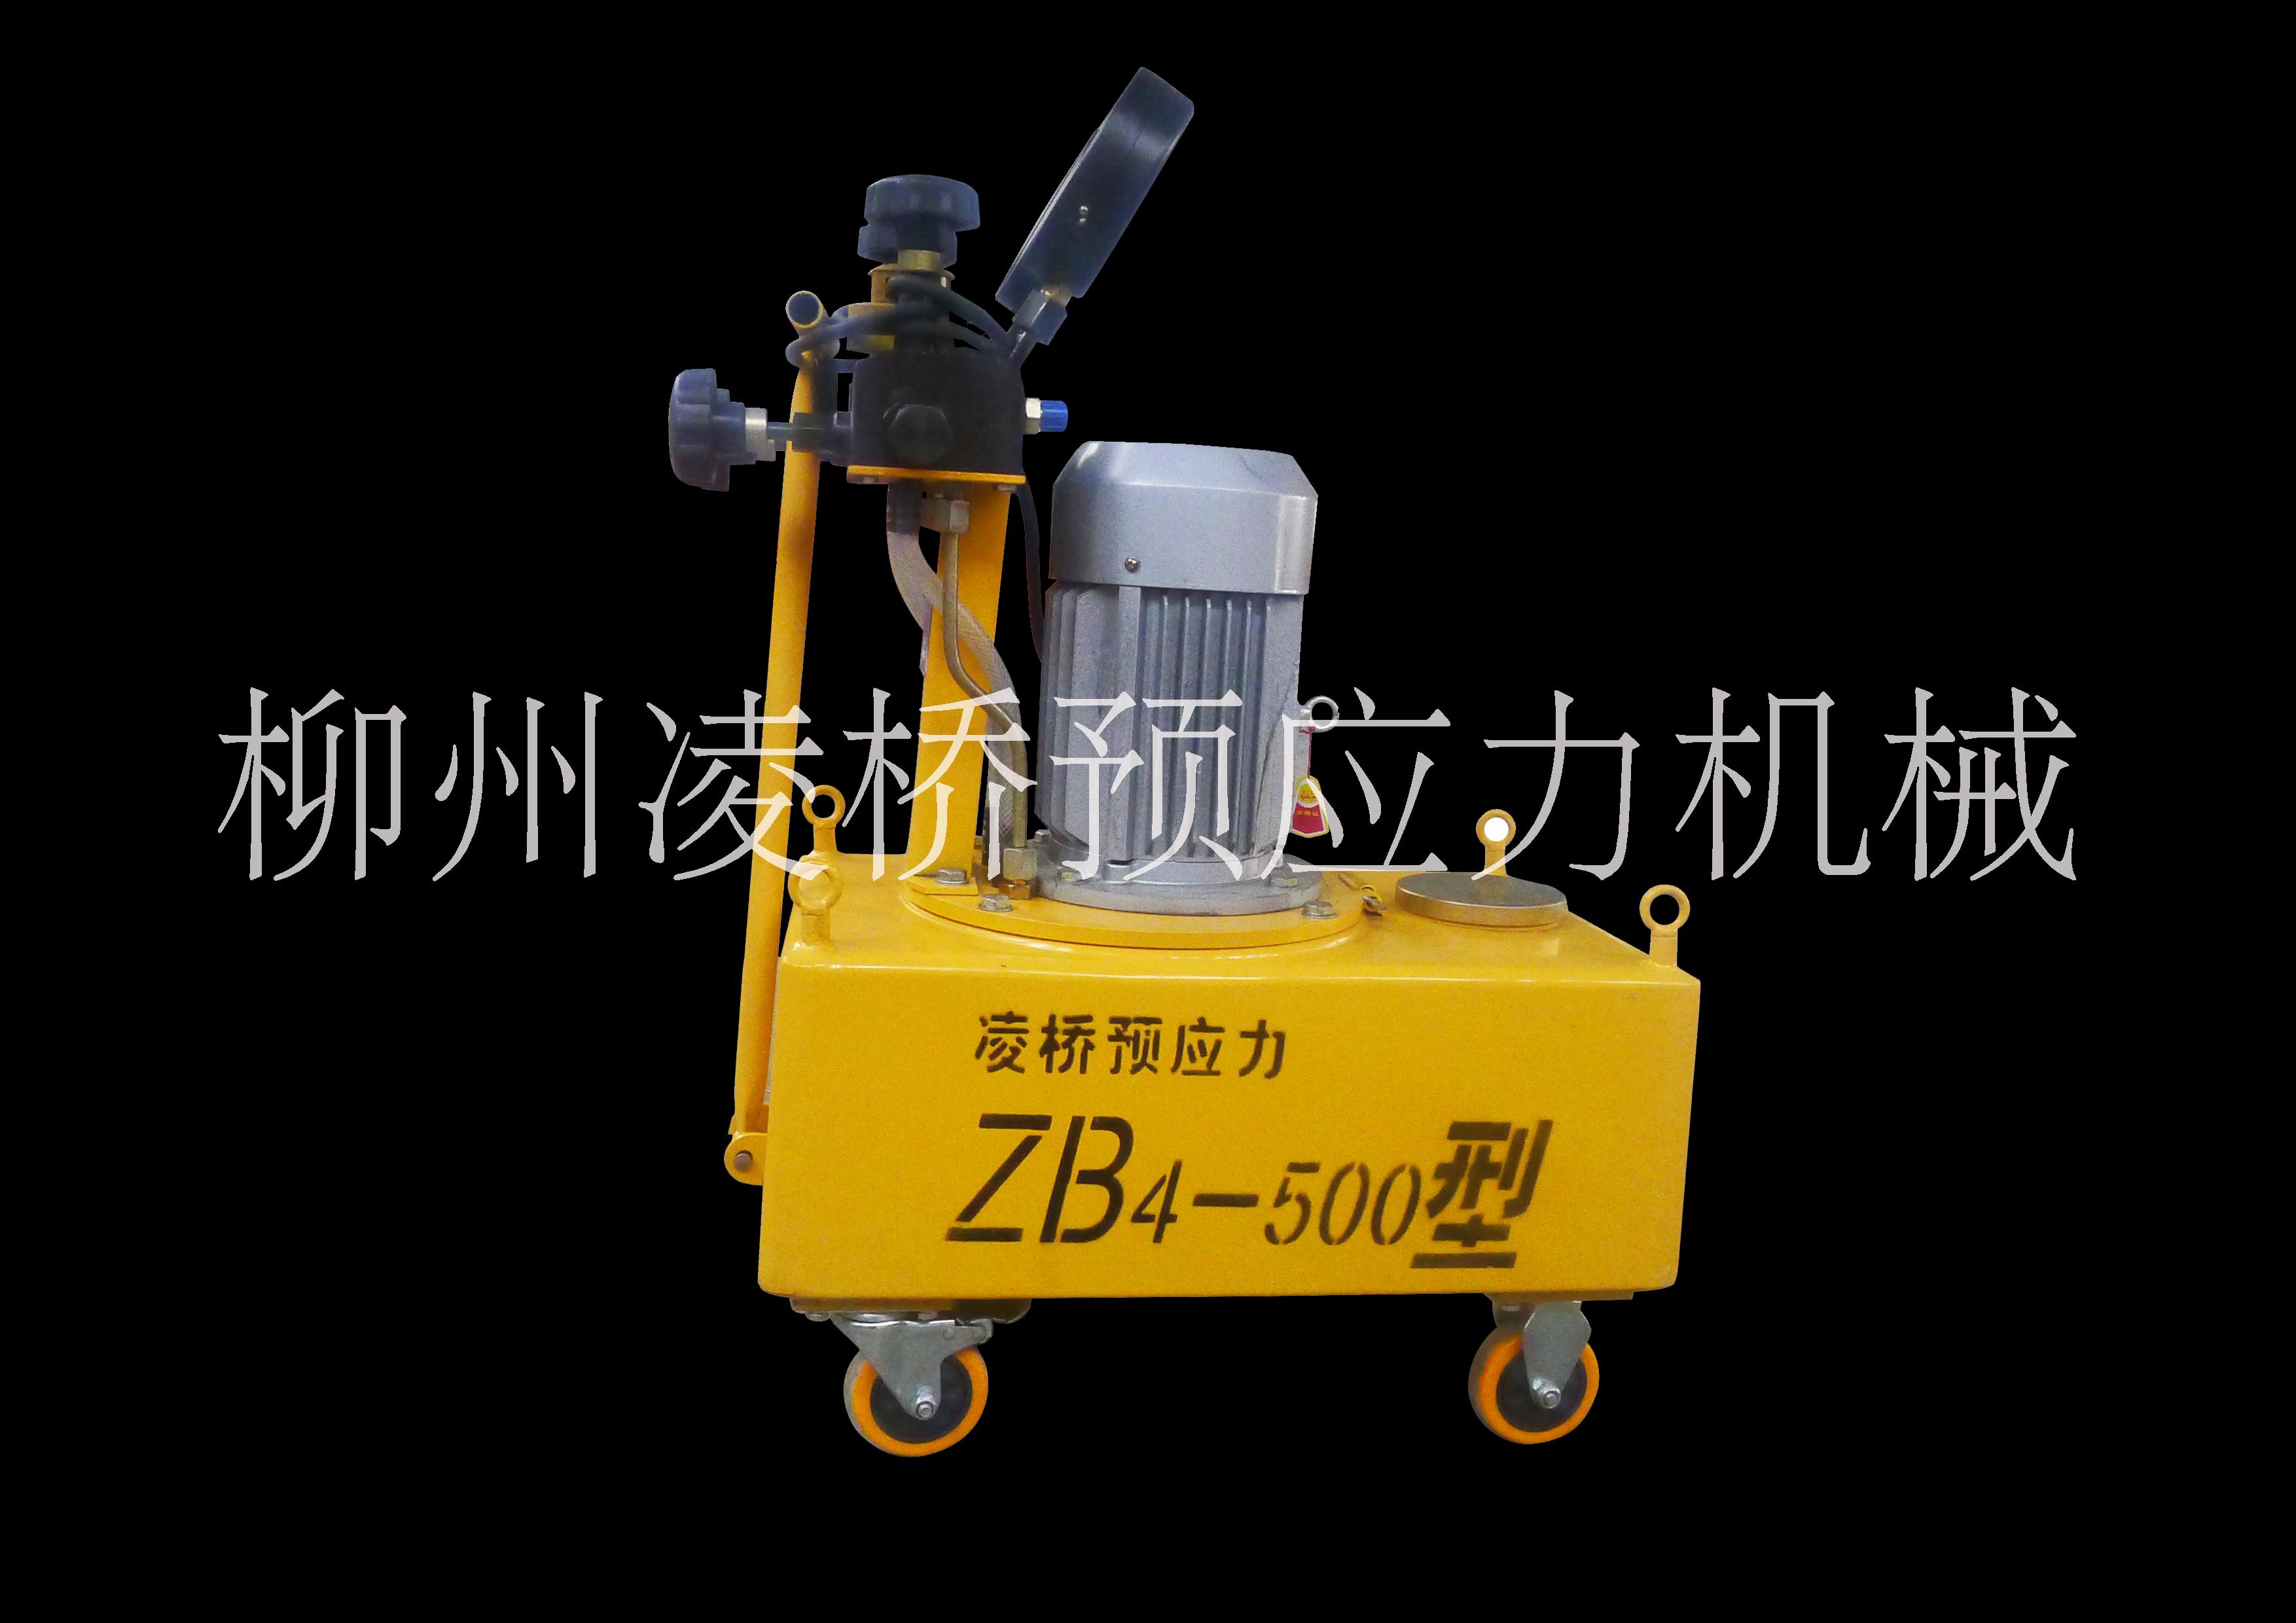 油泵生产厂家，电动油泵报价，ZB系列电动油泵，成都ZB系列油泵 ZB4-600电动油泵